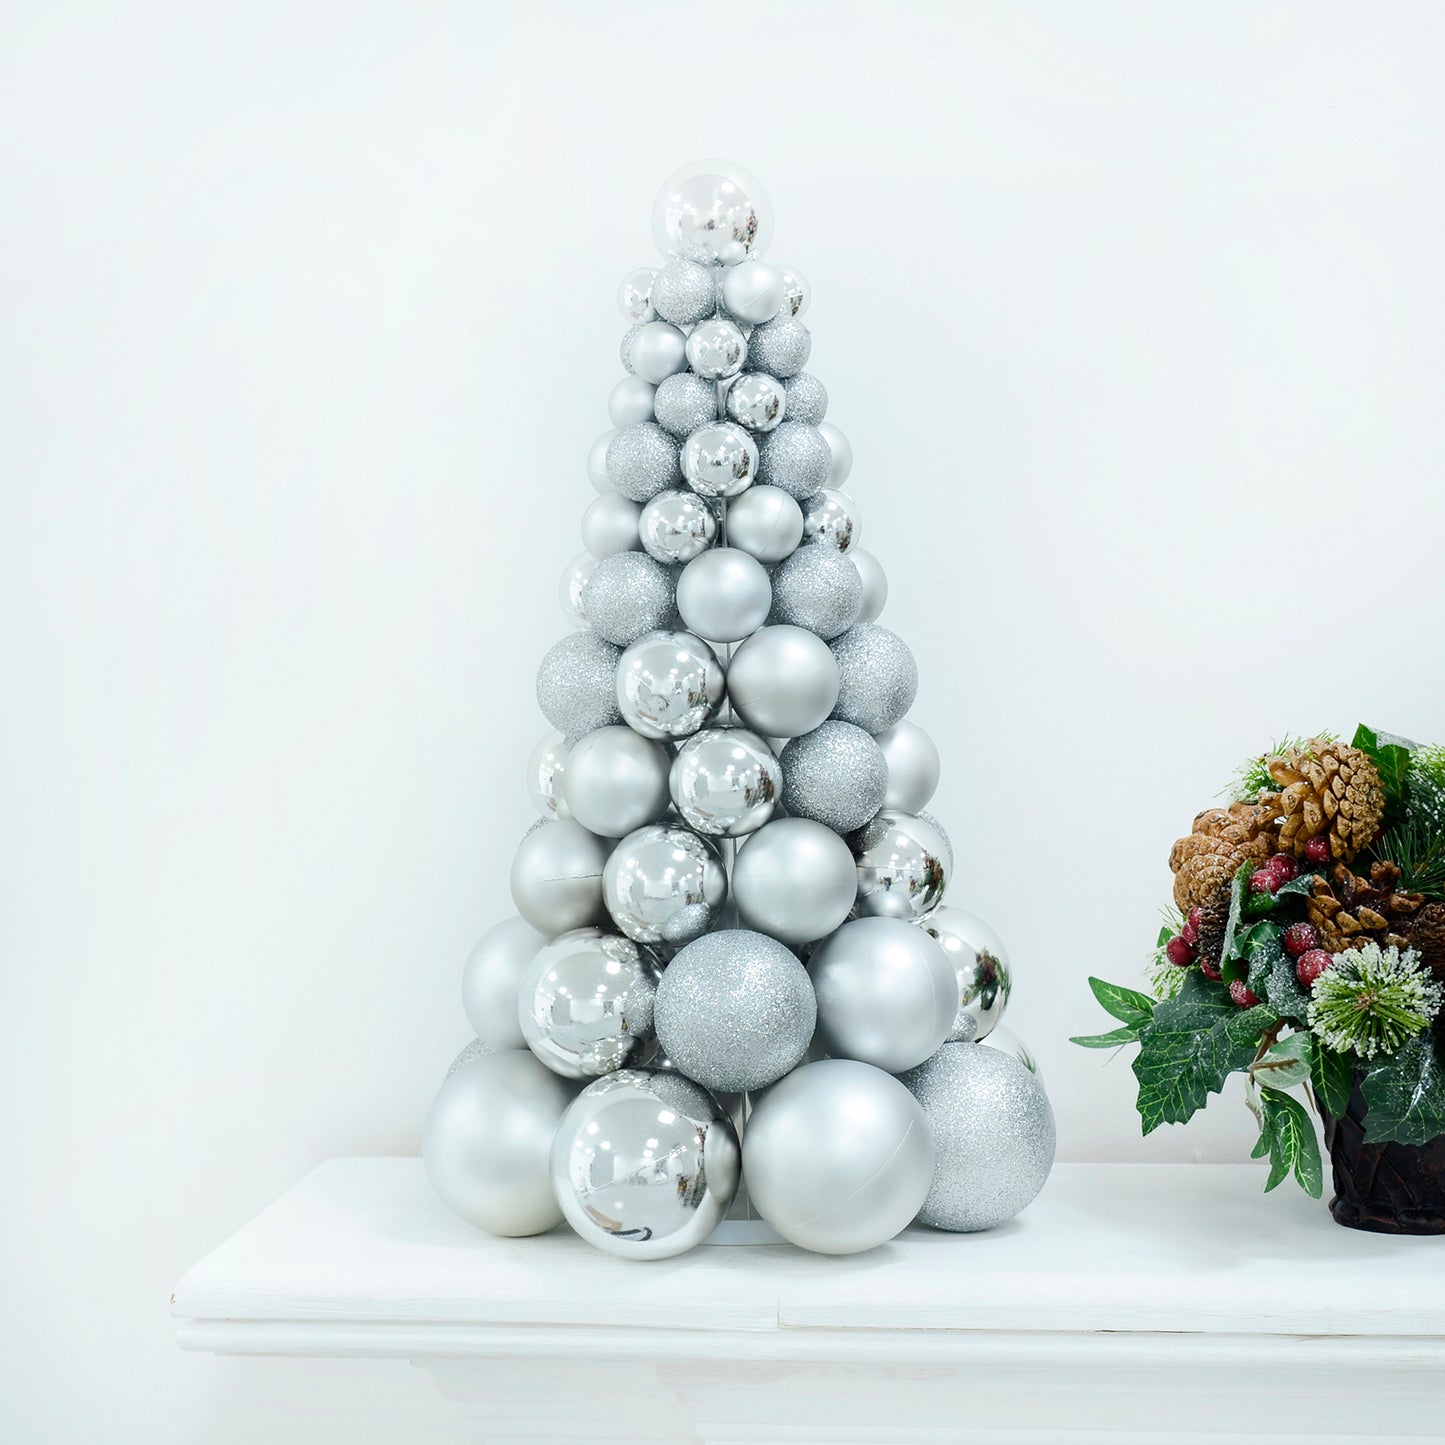 Mr Crimbo Mixed Bauble Tree Shaped Christmas Decoration 34cm - MrCrimbo.co.uk -XS7261 - Navy -bauble decorations